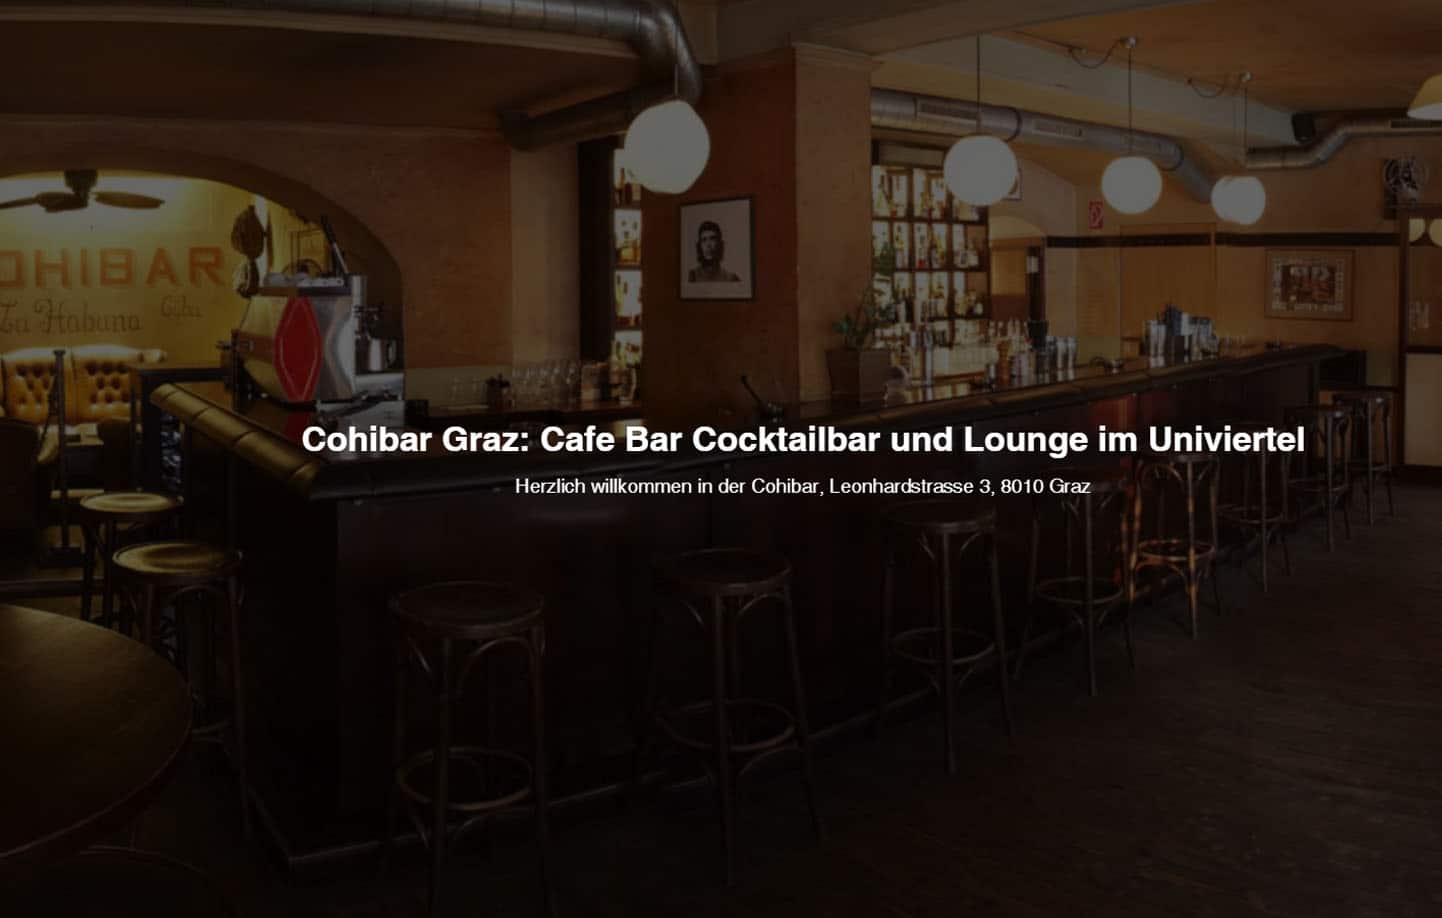 Die Cohibar Graz: Cafe, Bar und Cocktailbar Graz